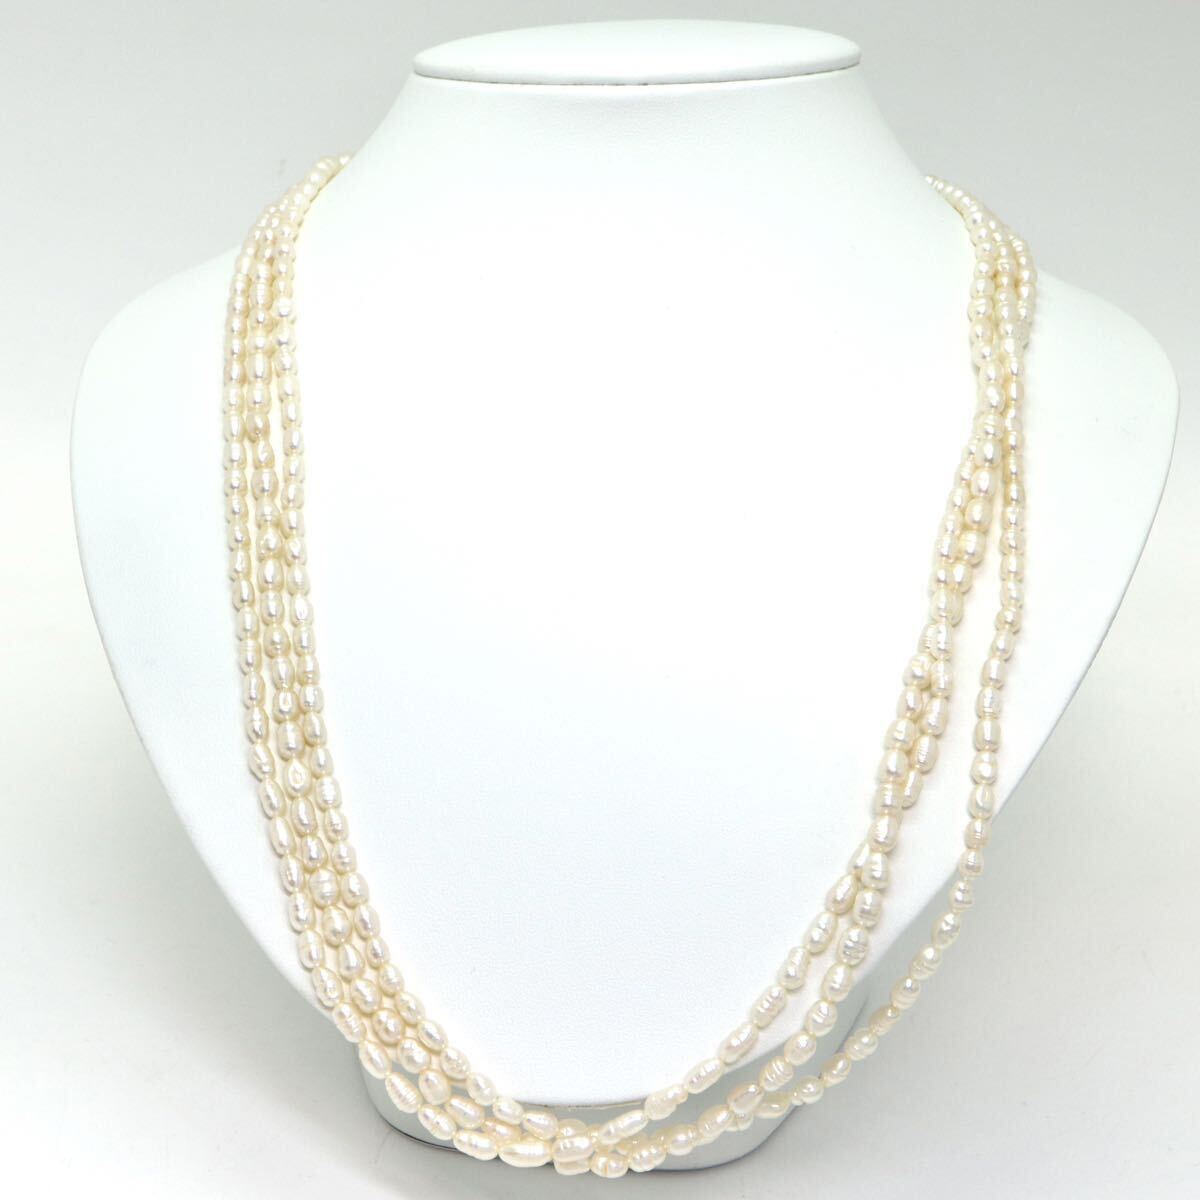 《本真珠3連ネックレス》M 47.6g 約62cm pearl necklace ジュエリー jewelry DA0/DA0